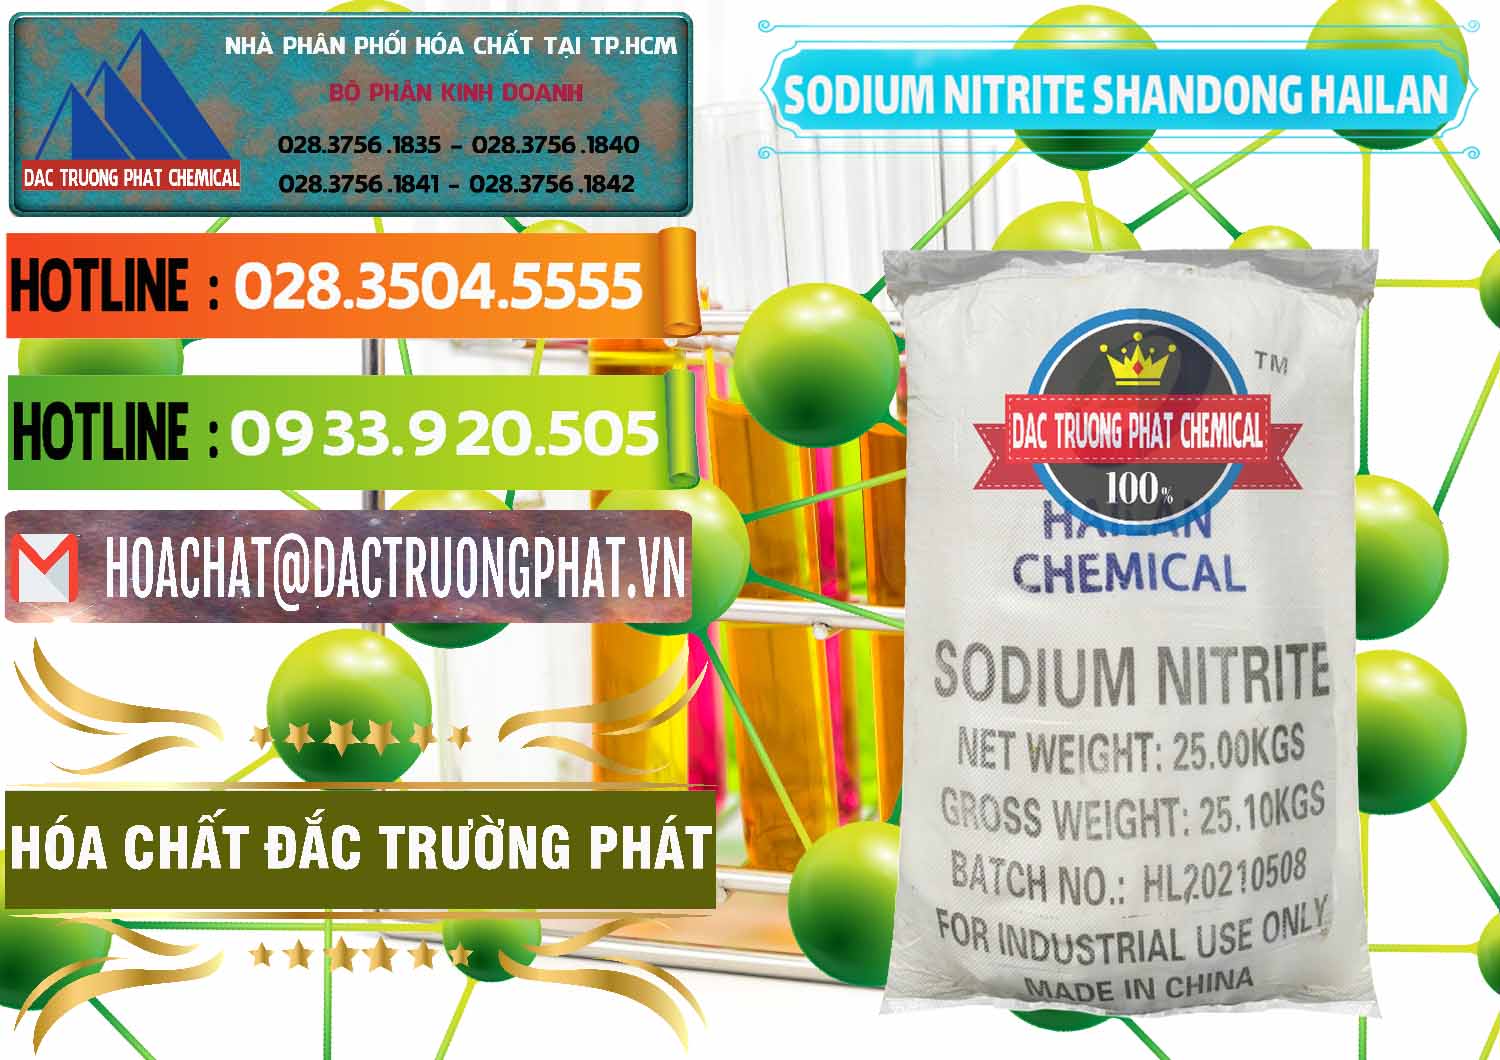 Bán - phân phối Sodium Nitrite - NANO2 99.3% Shandong Hailan Trung Quốc China - 0284 - Đơn vị chuyên kinh doanh _ phân phối hóa chất tại TP.HCM - cungcaphoachat.com.vn